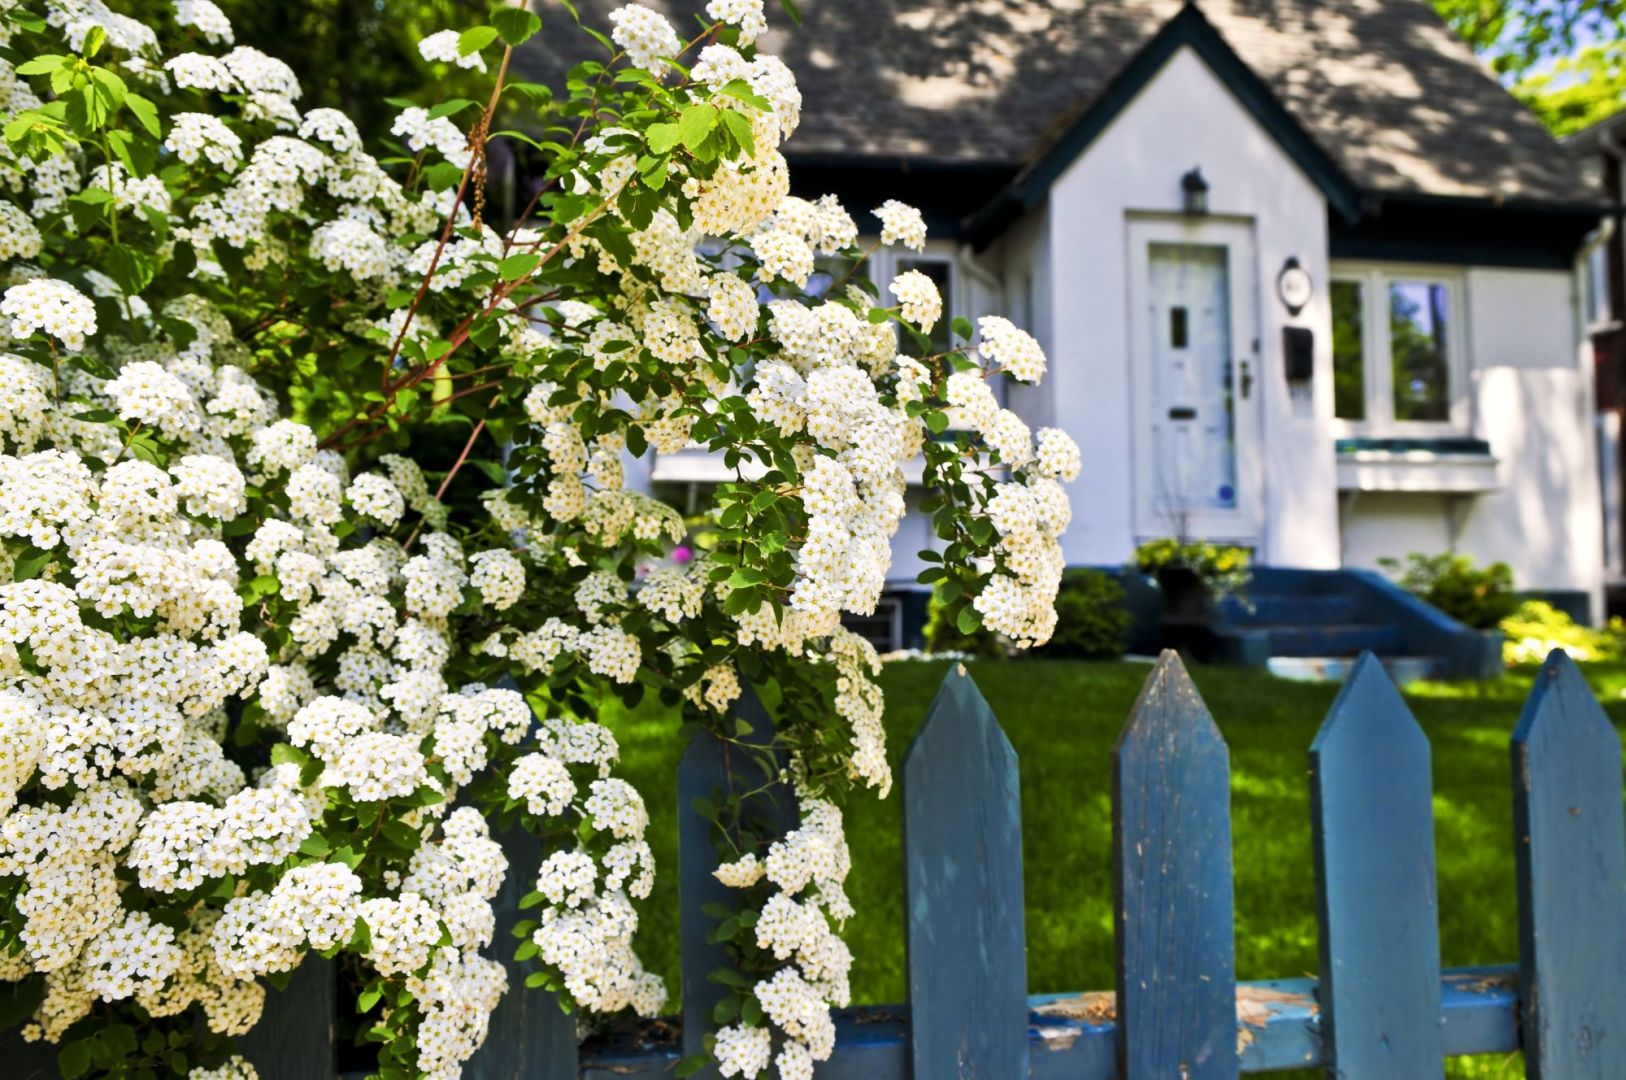 Polskie ogrody - zobacz jak je urządzono. Fot. Shutterstock